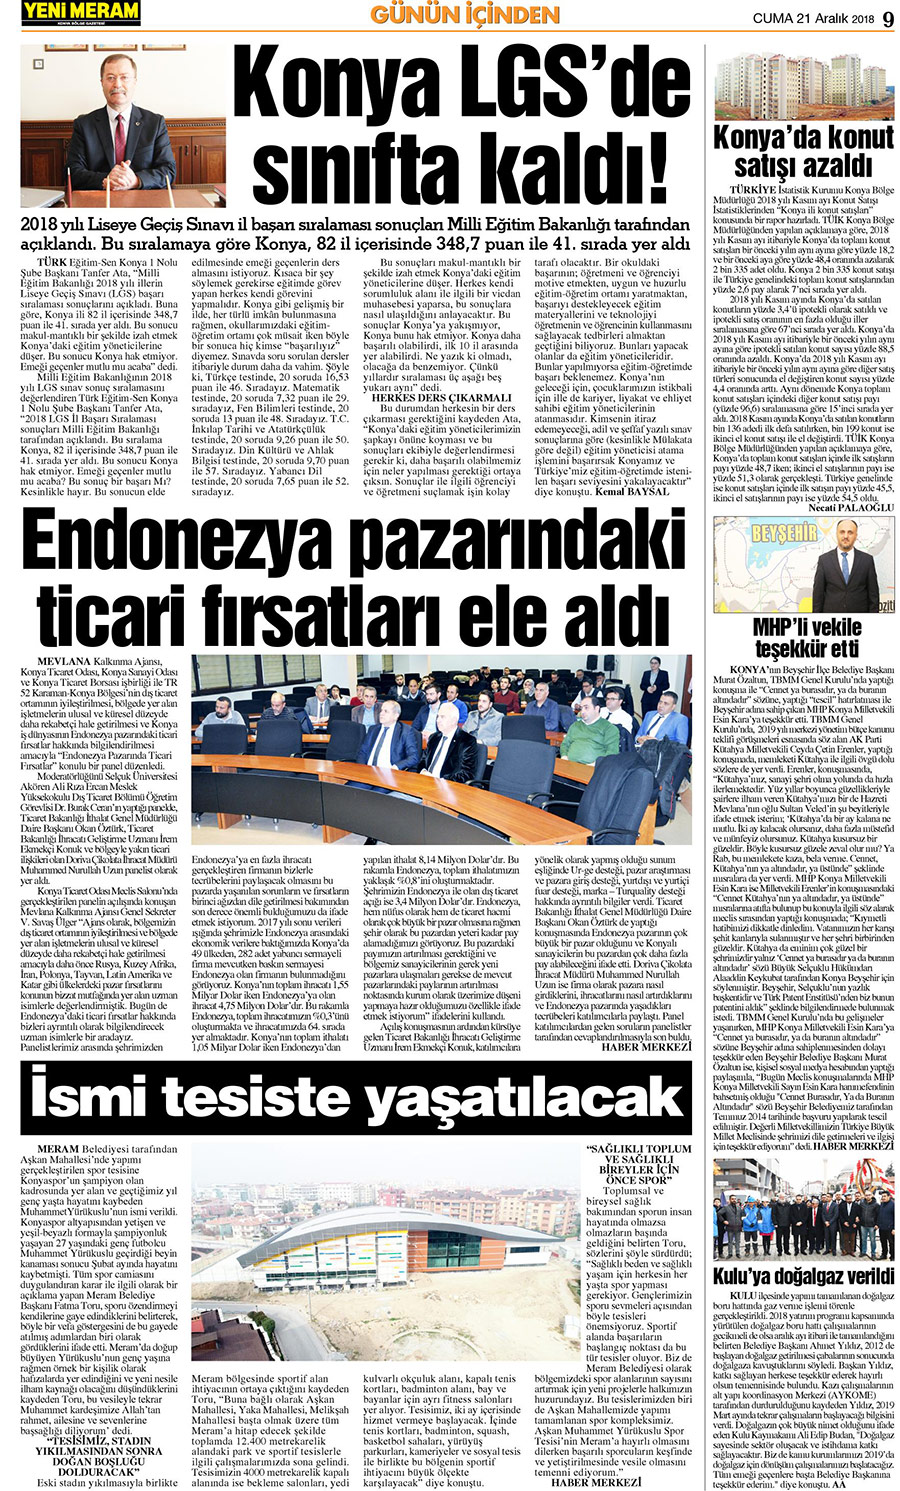 21 Aralık 2018 Yeni Meram Gazetesi